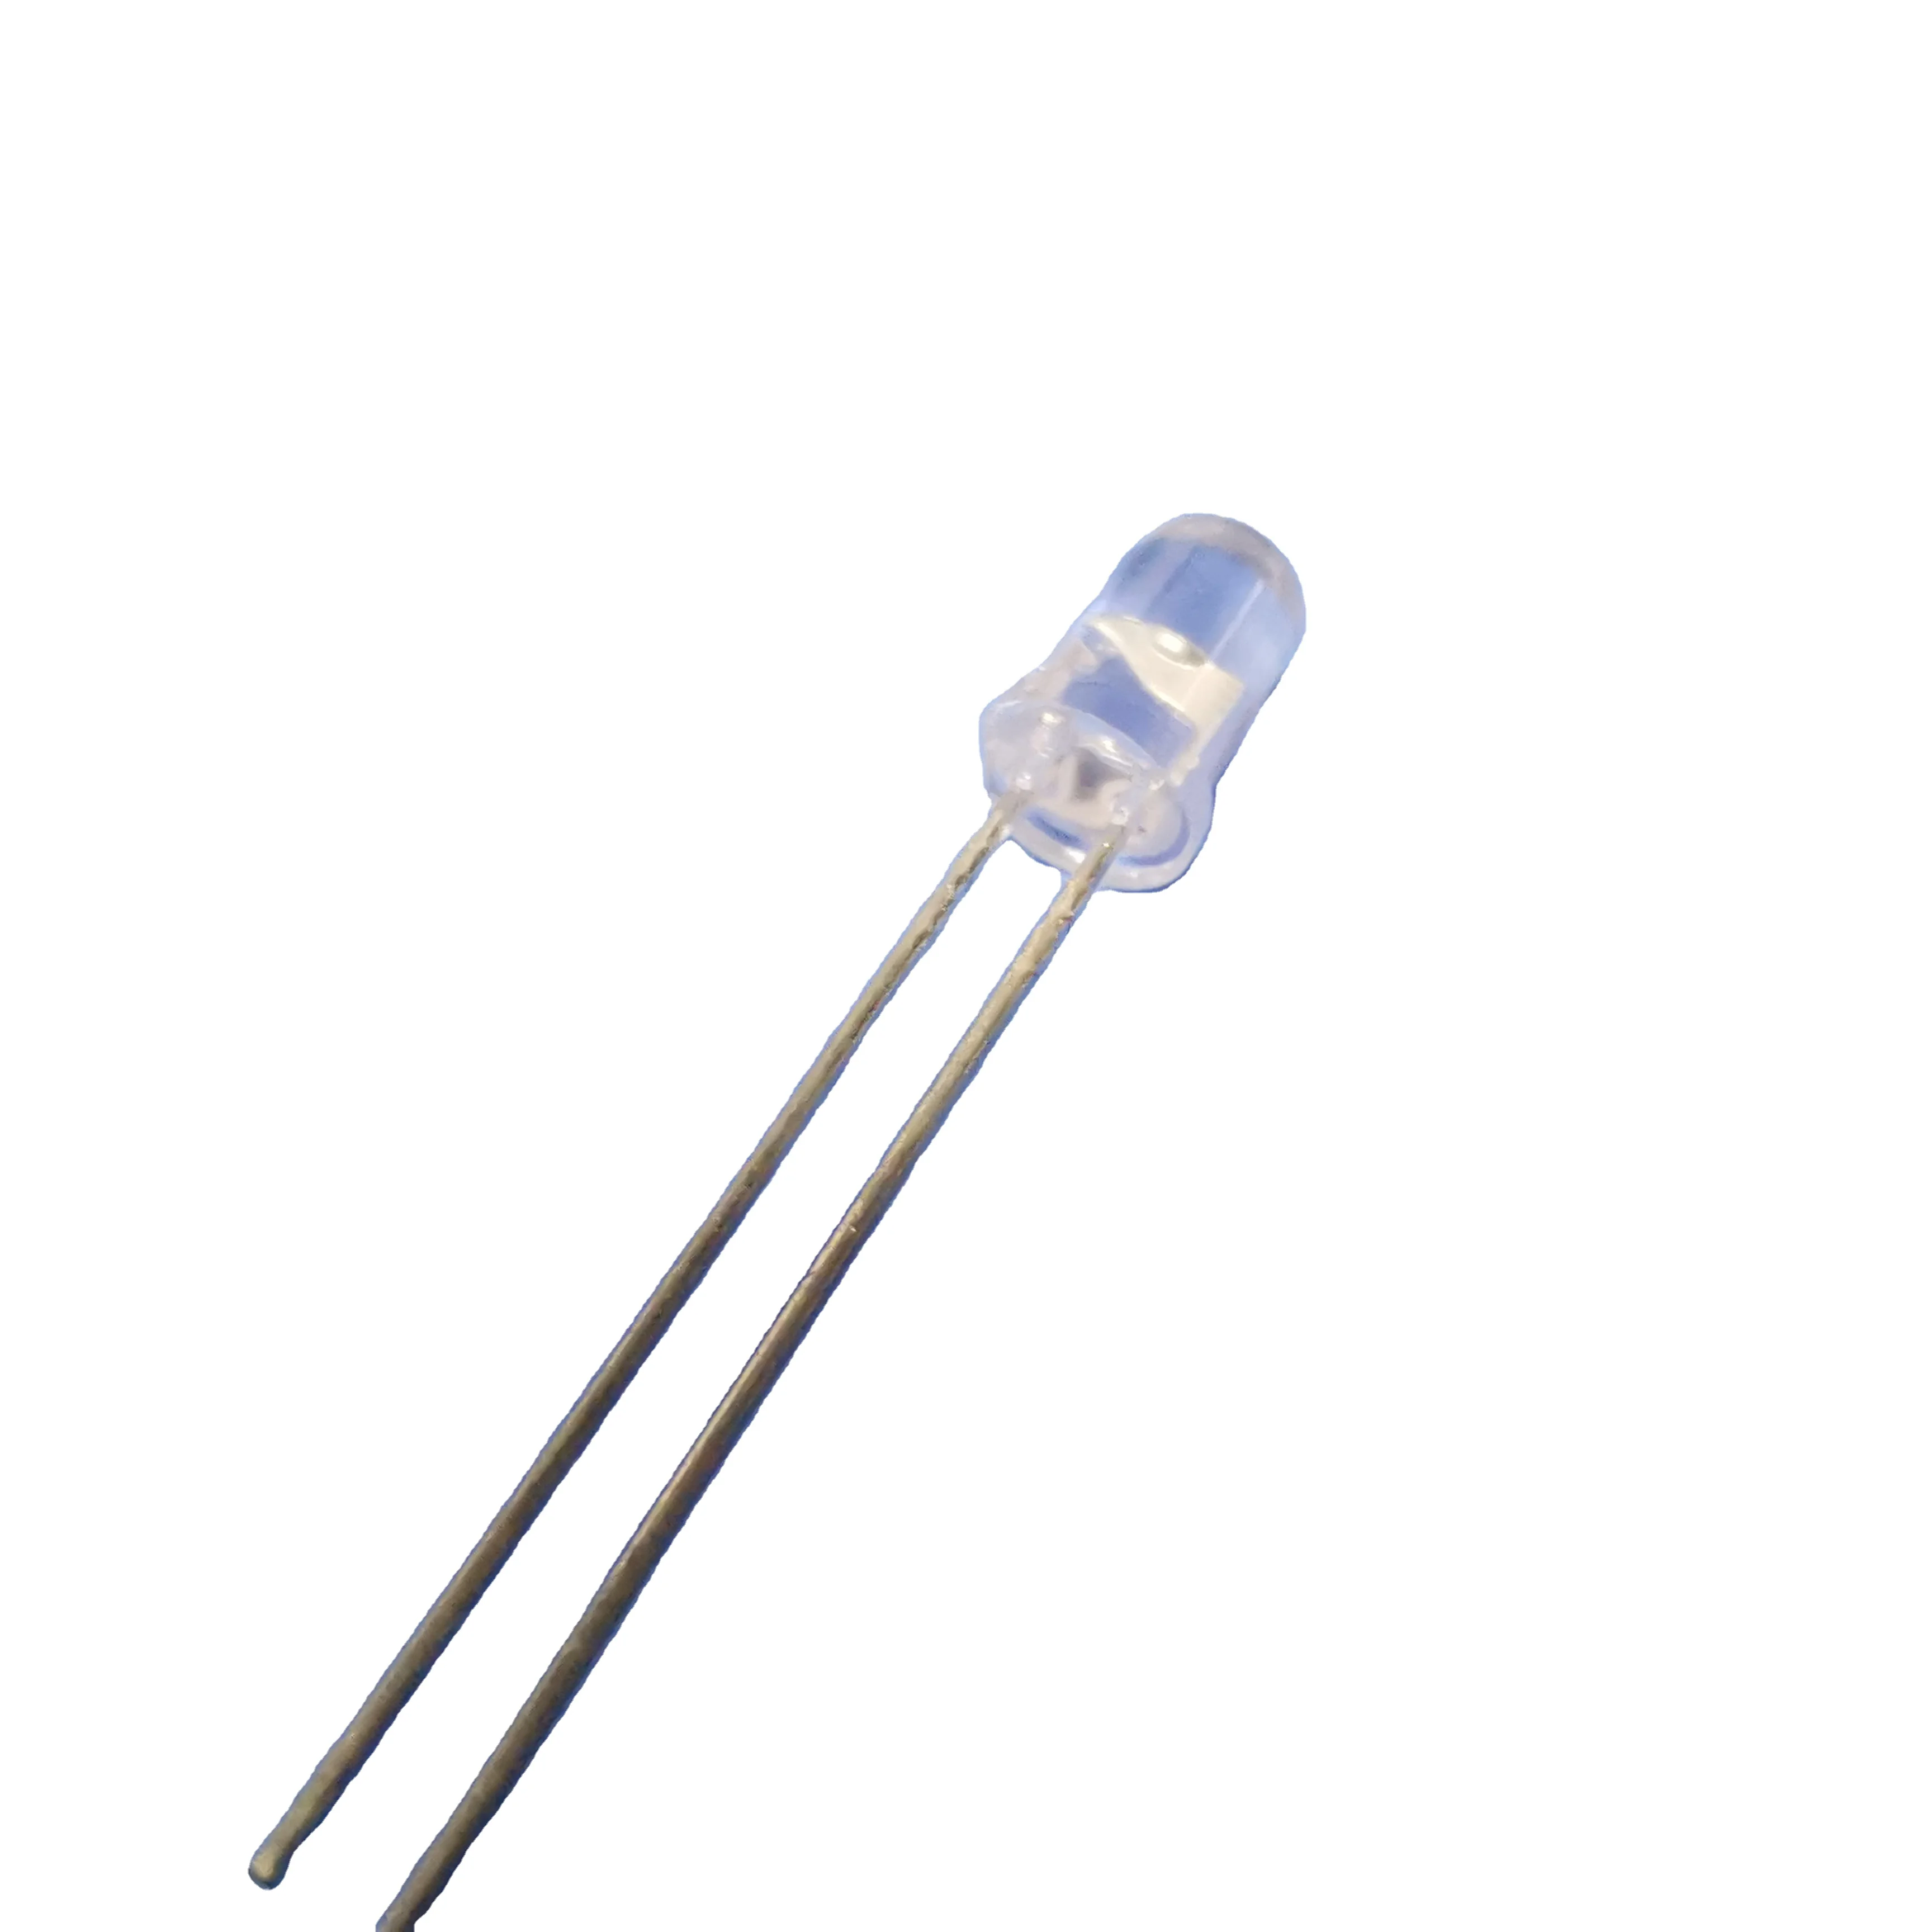 3mm 5mm 8mm 10mm Led light emitting diode manufacturer